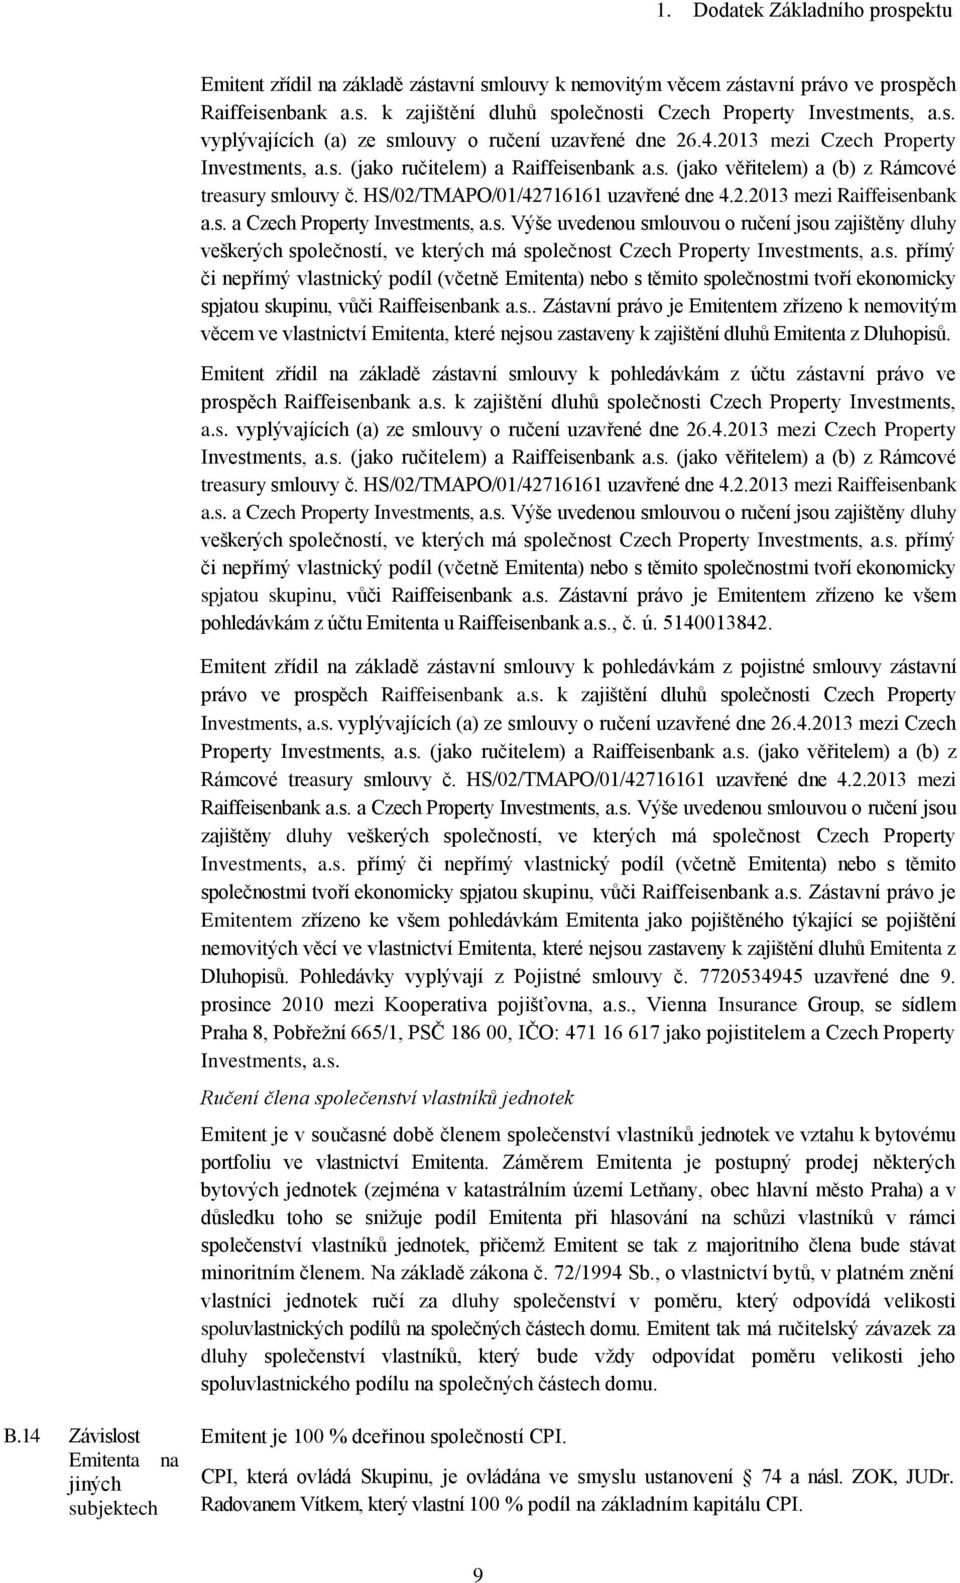 HS/02/TMAPO/01/42716161 uzavřené dne 4.2.2013 mezi Raiffeisenbank a.s. a Czech Property Investments, a.s. Výše uvedenou smlouvou o ručení jsou zajištěny dluhy veškerých společností, ve kterých má společnost Czech Property Investments, a.